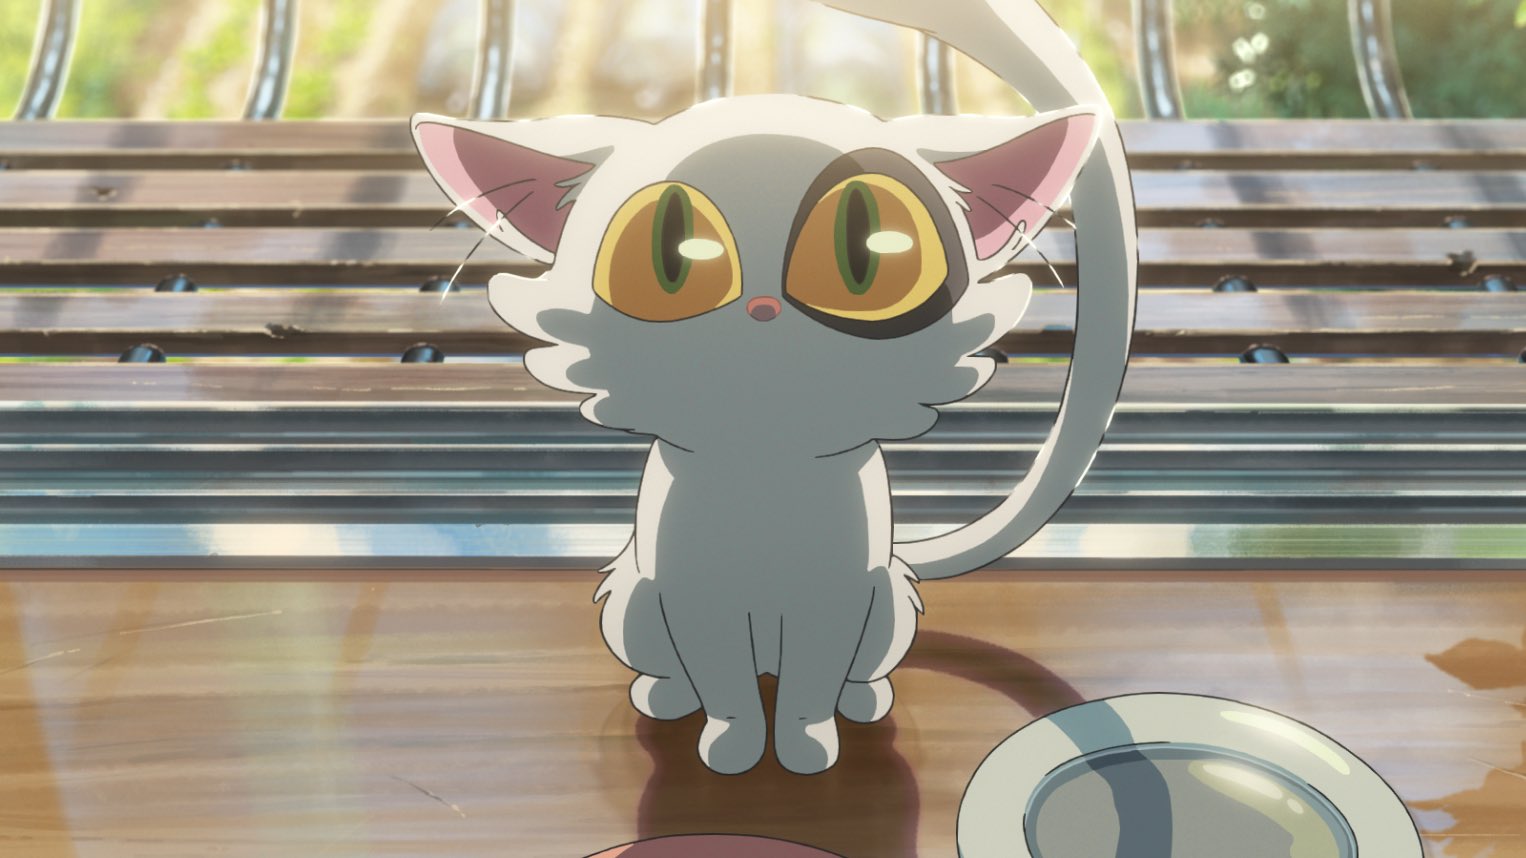 Suzume no Tojimari encabezado de anime de gato